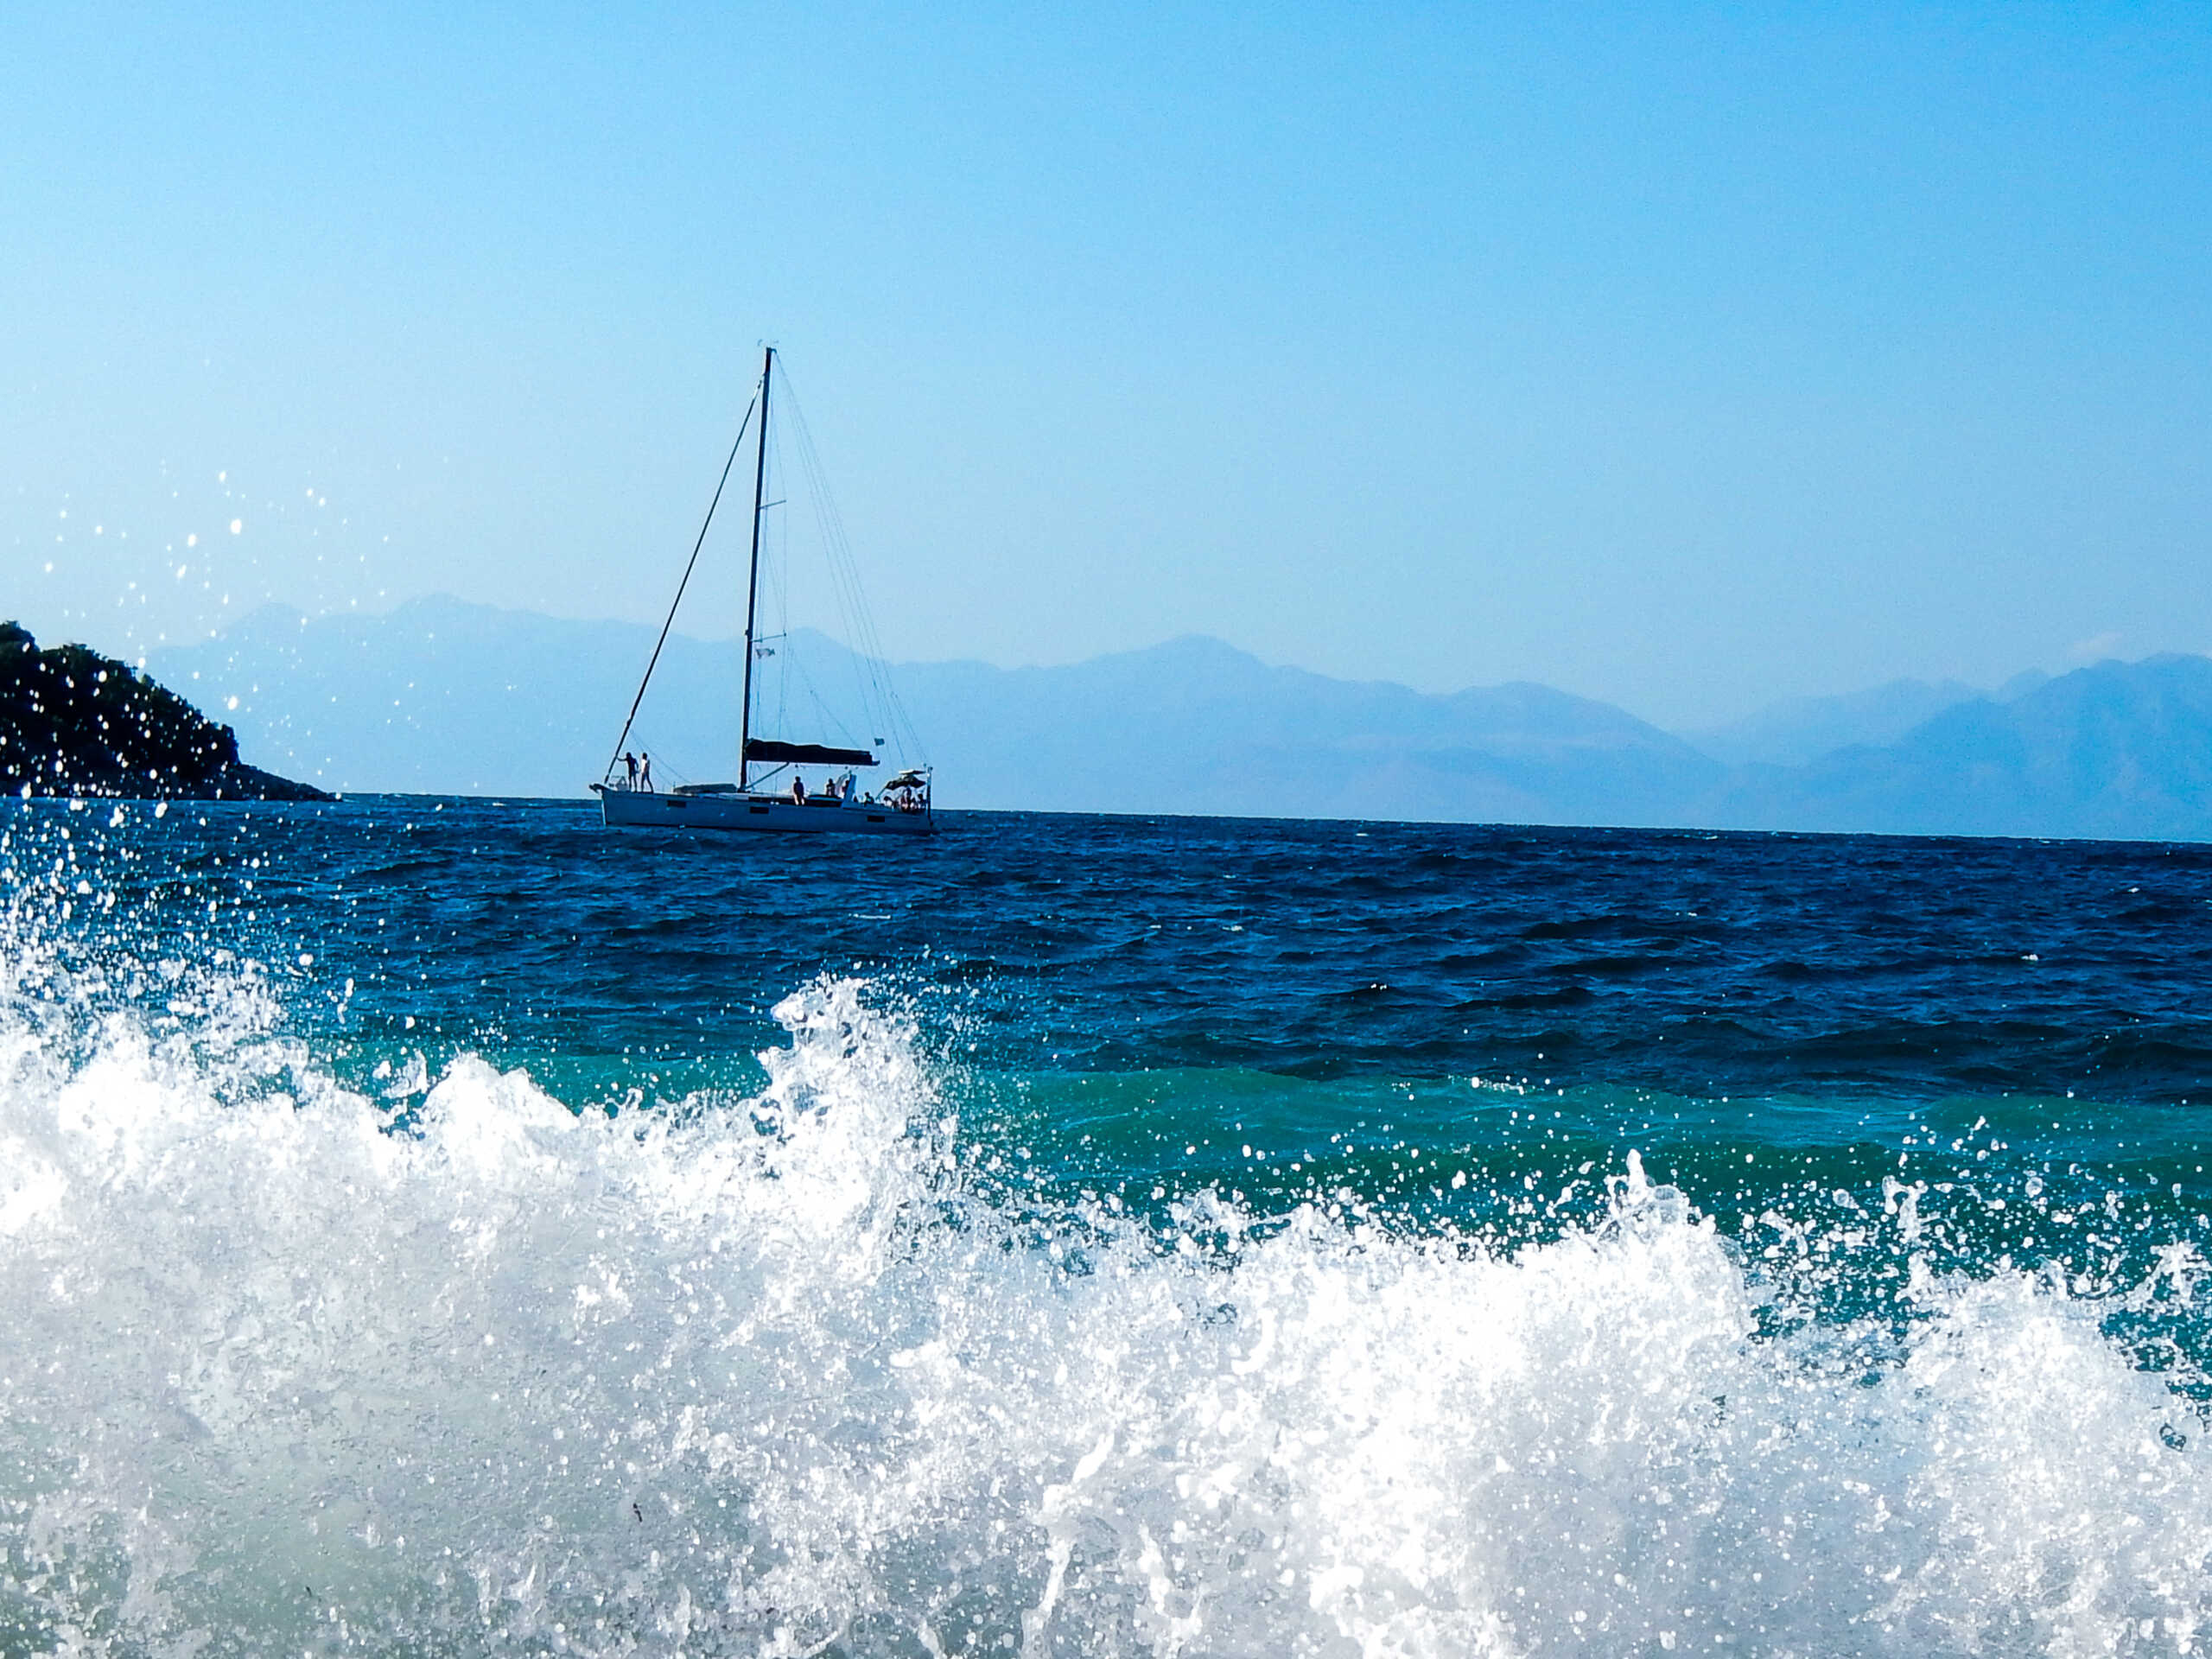 Κορινθιακός Κόλπος: Σώος εντοπίστηκε ο καπετάνιος του ιστιοπλοϊκού – Οι άνεμοι τον έριξαν στη θάλασσα